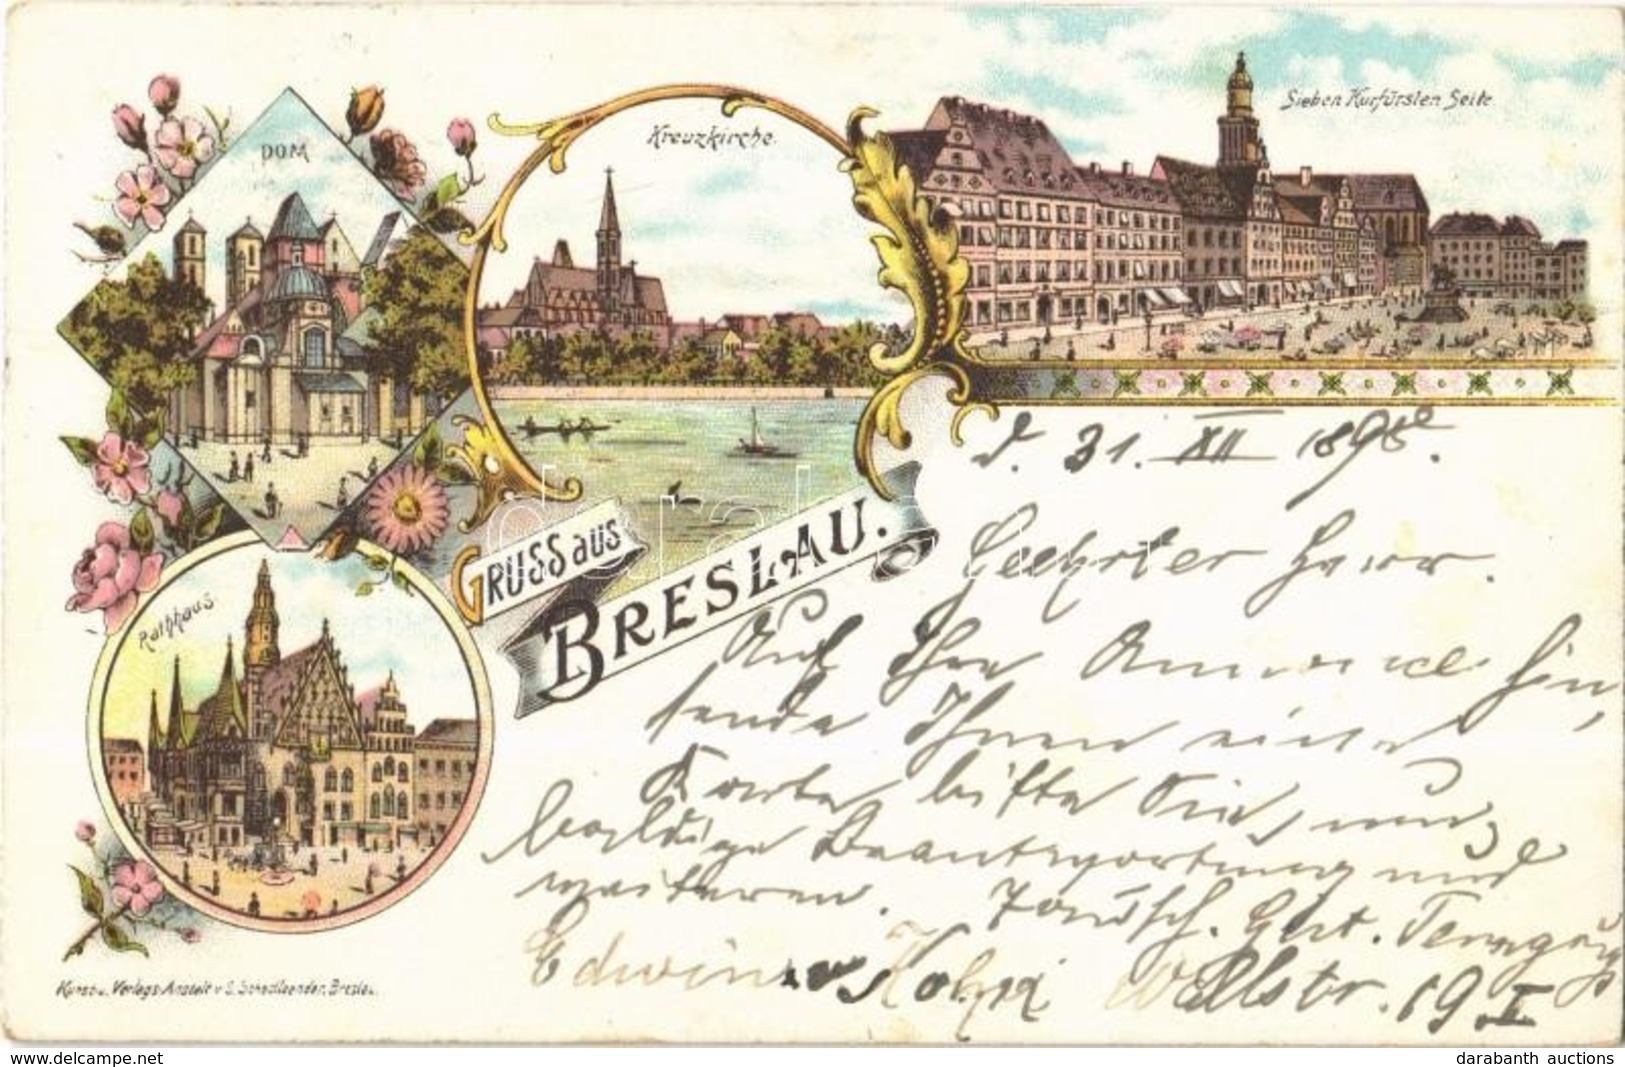 T2/T3 1898 Wroclaw, Breslau; Dom, Kreuzkirche, Sieben Kurfürsten Seite, Rathaus / Dome, Church, Town Hall. S. Schottlaen - Non Classés